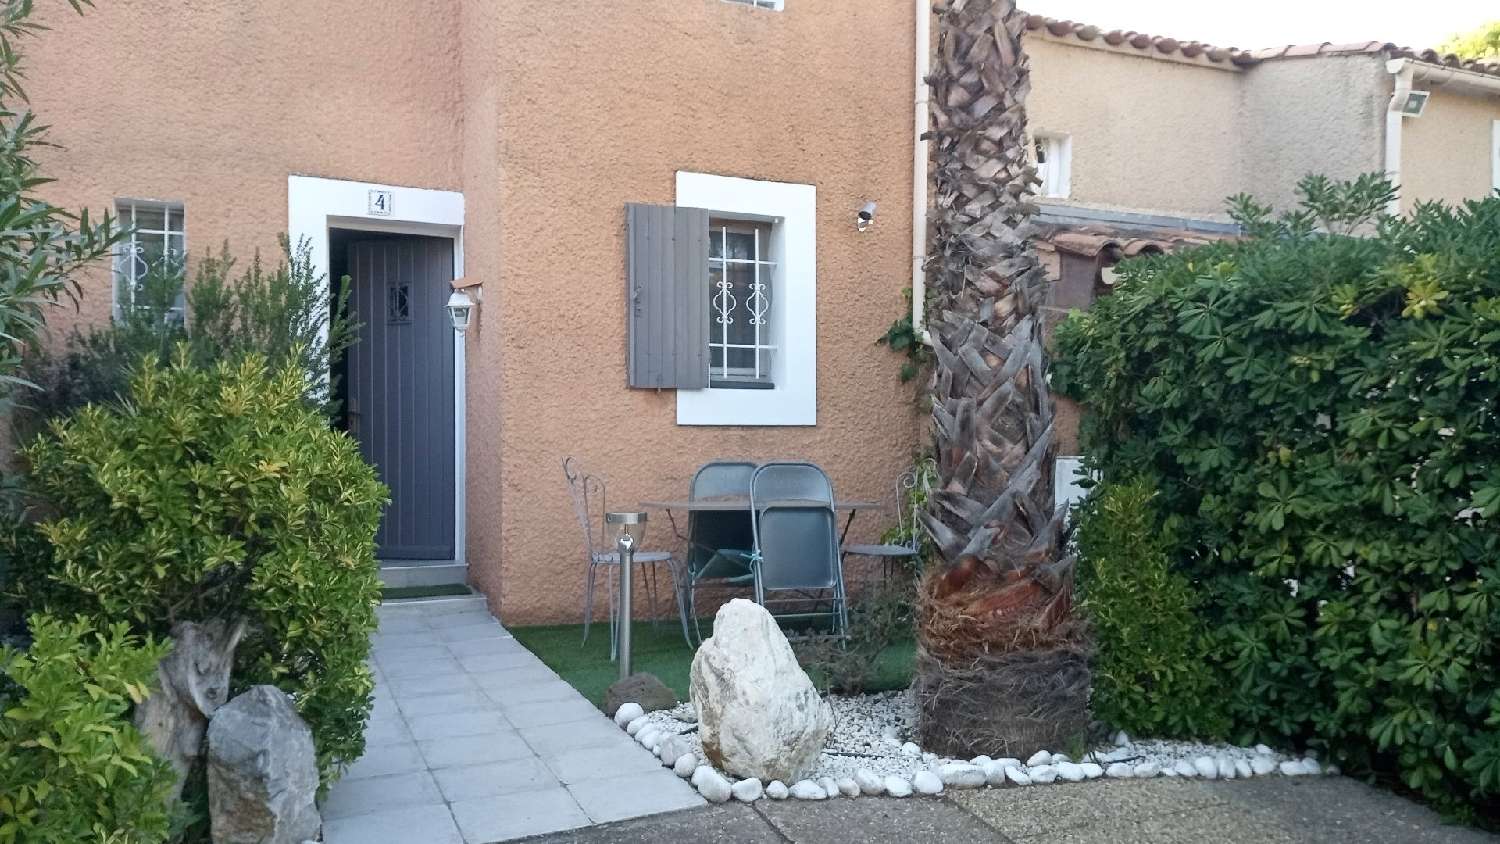  à vendre maison Agde Hérault 1